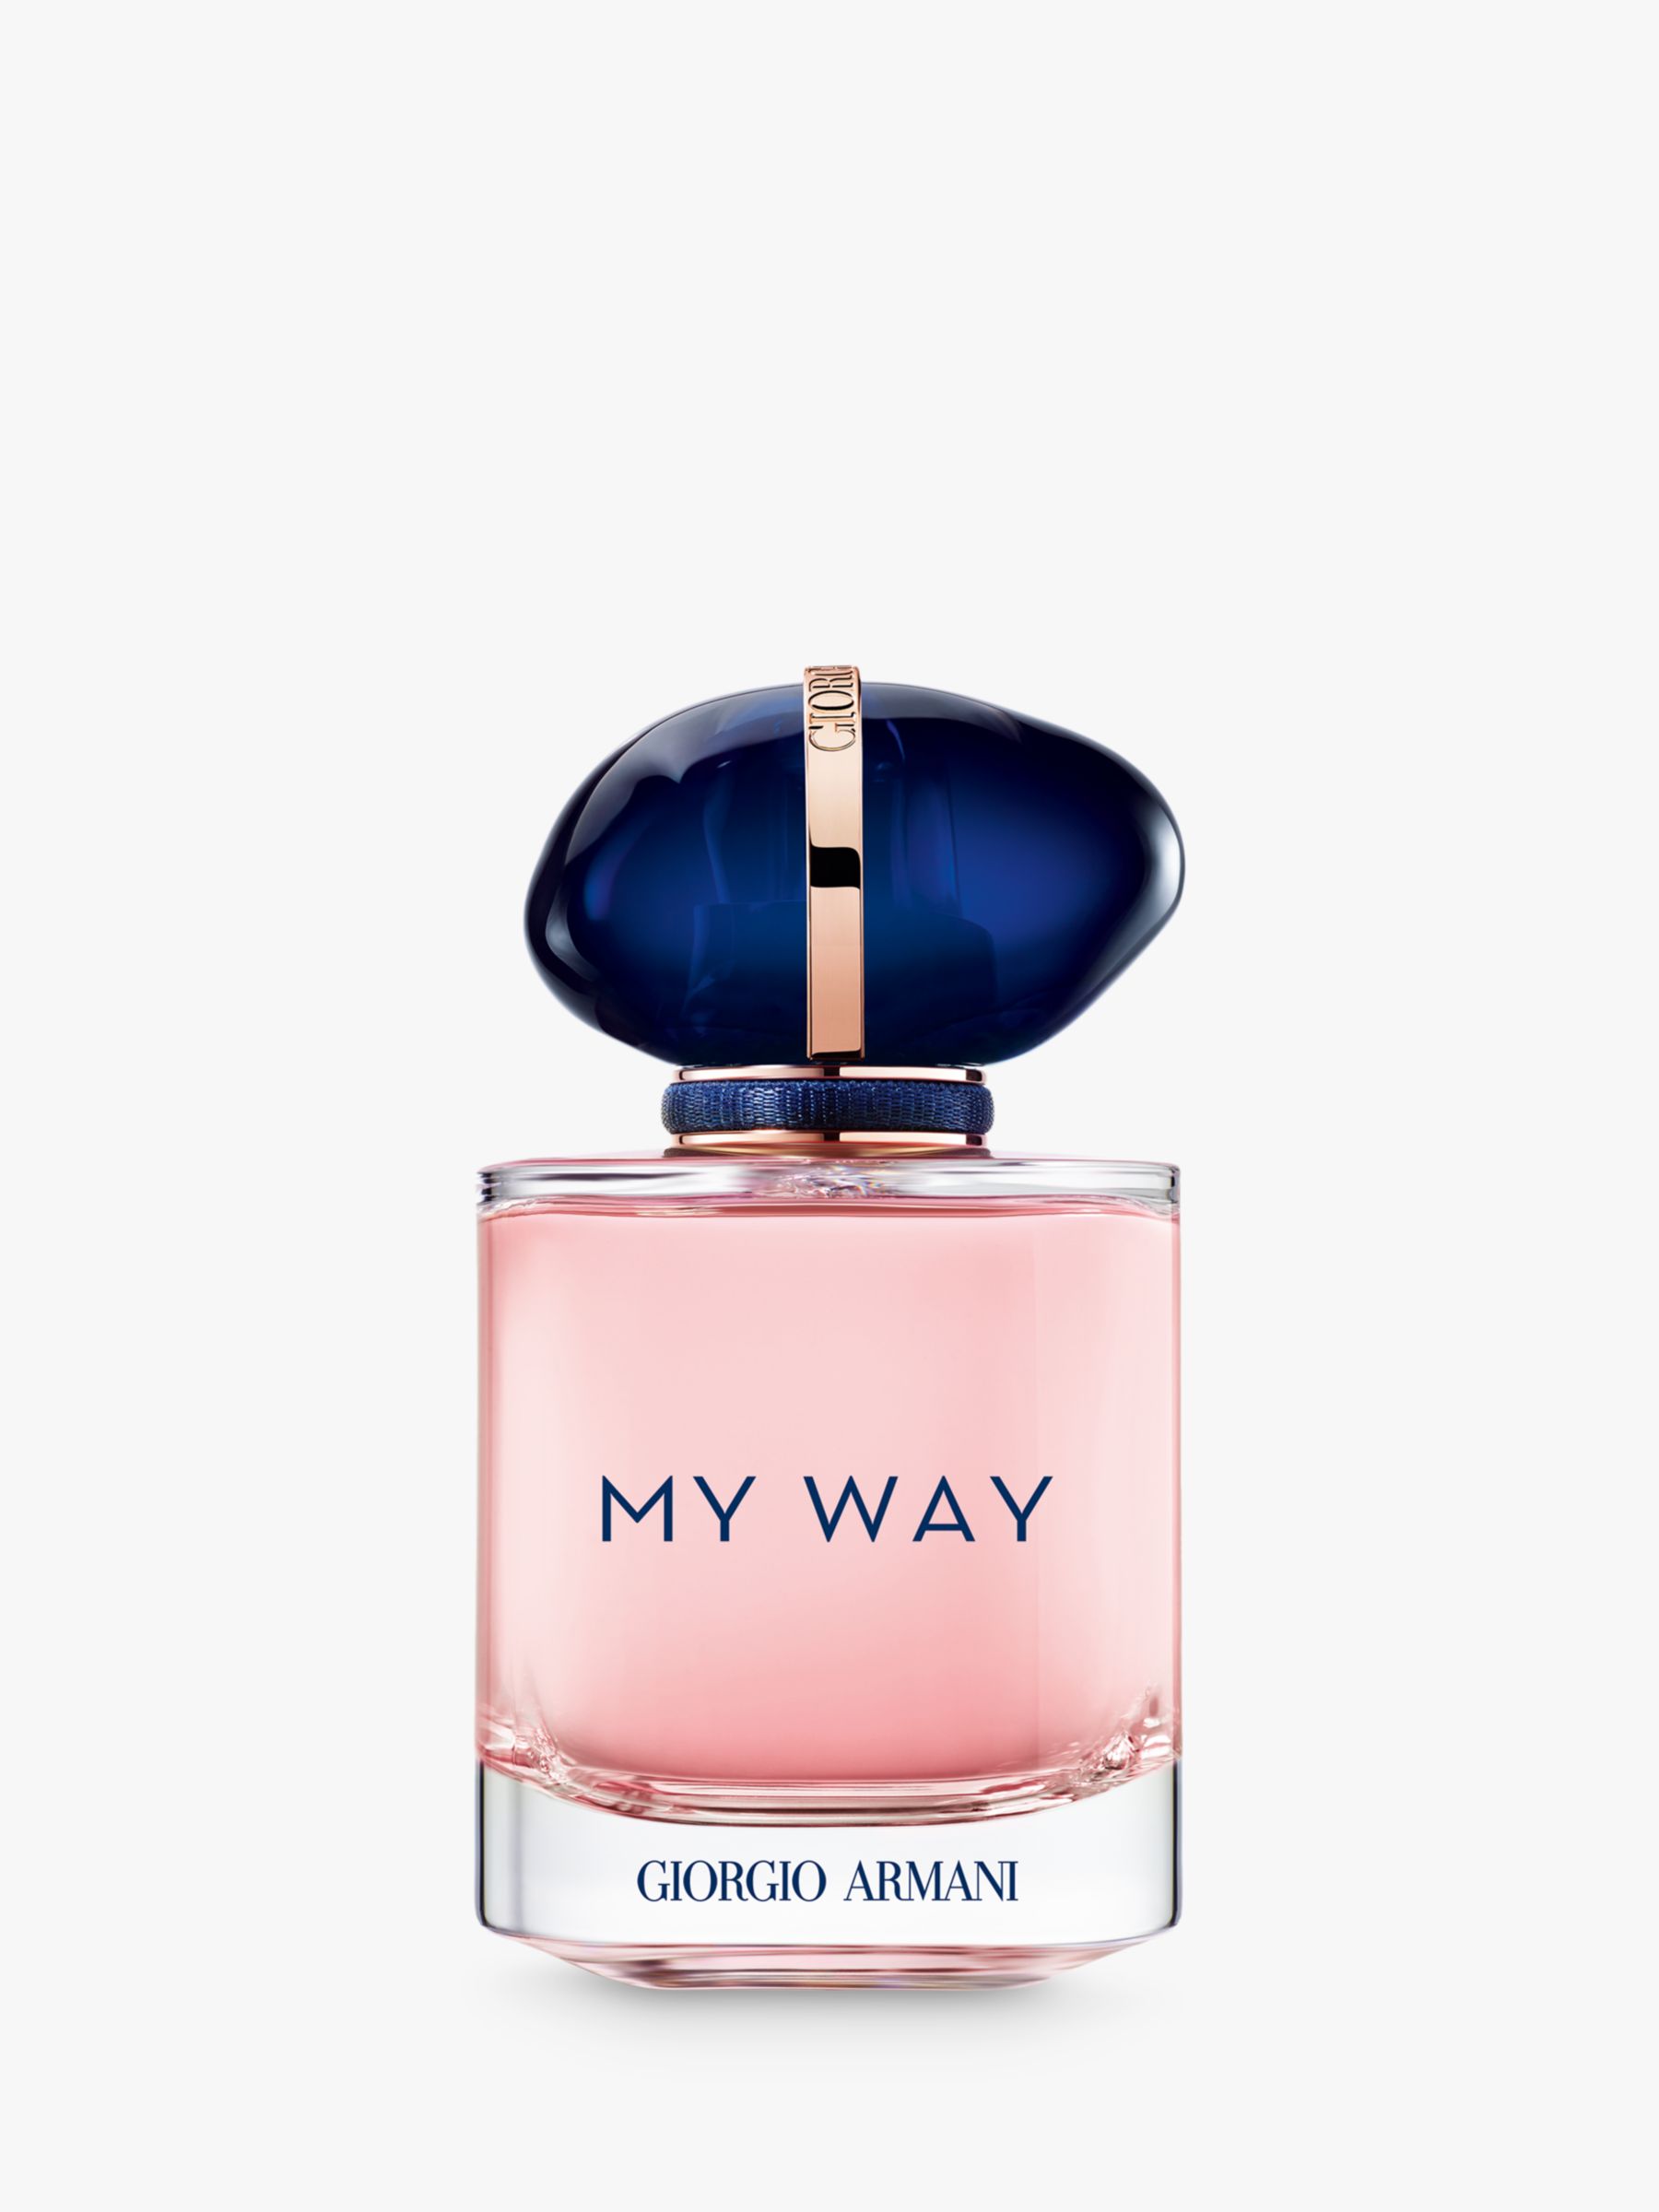 Giorgio Armani My Way Eau de Parfum Refillable, 30ml 1